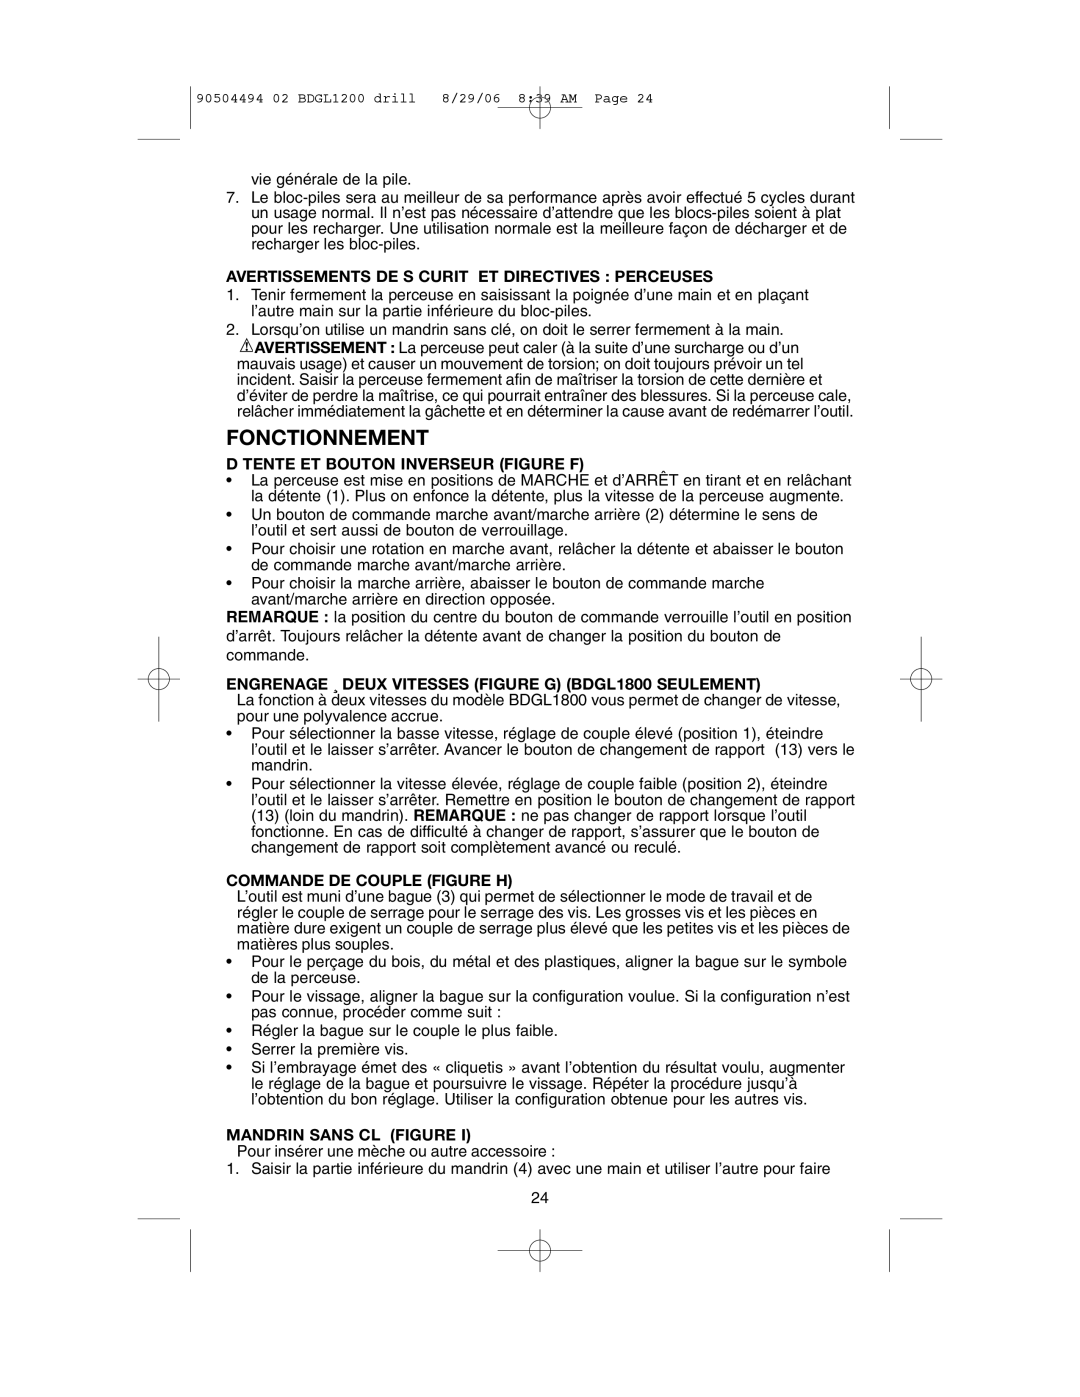 Black & Decker BDGL1800 Fonctionnement, Avertissements De S Curit Et Directives Perceuses, Commande De Couple Figure H 